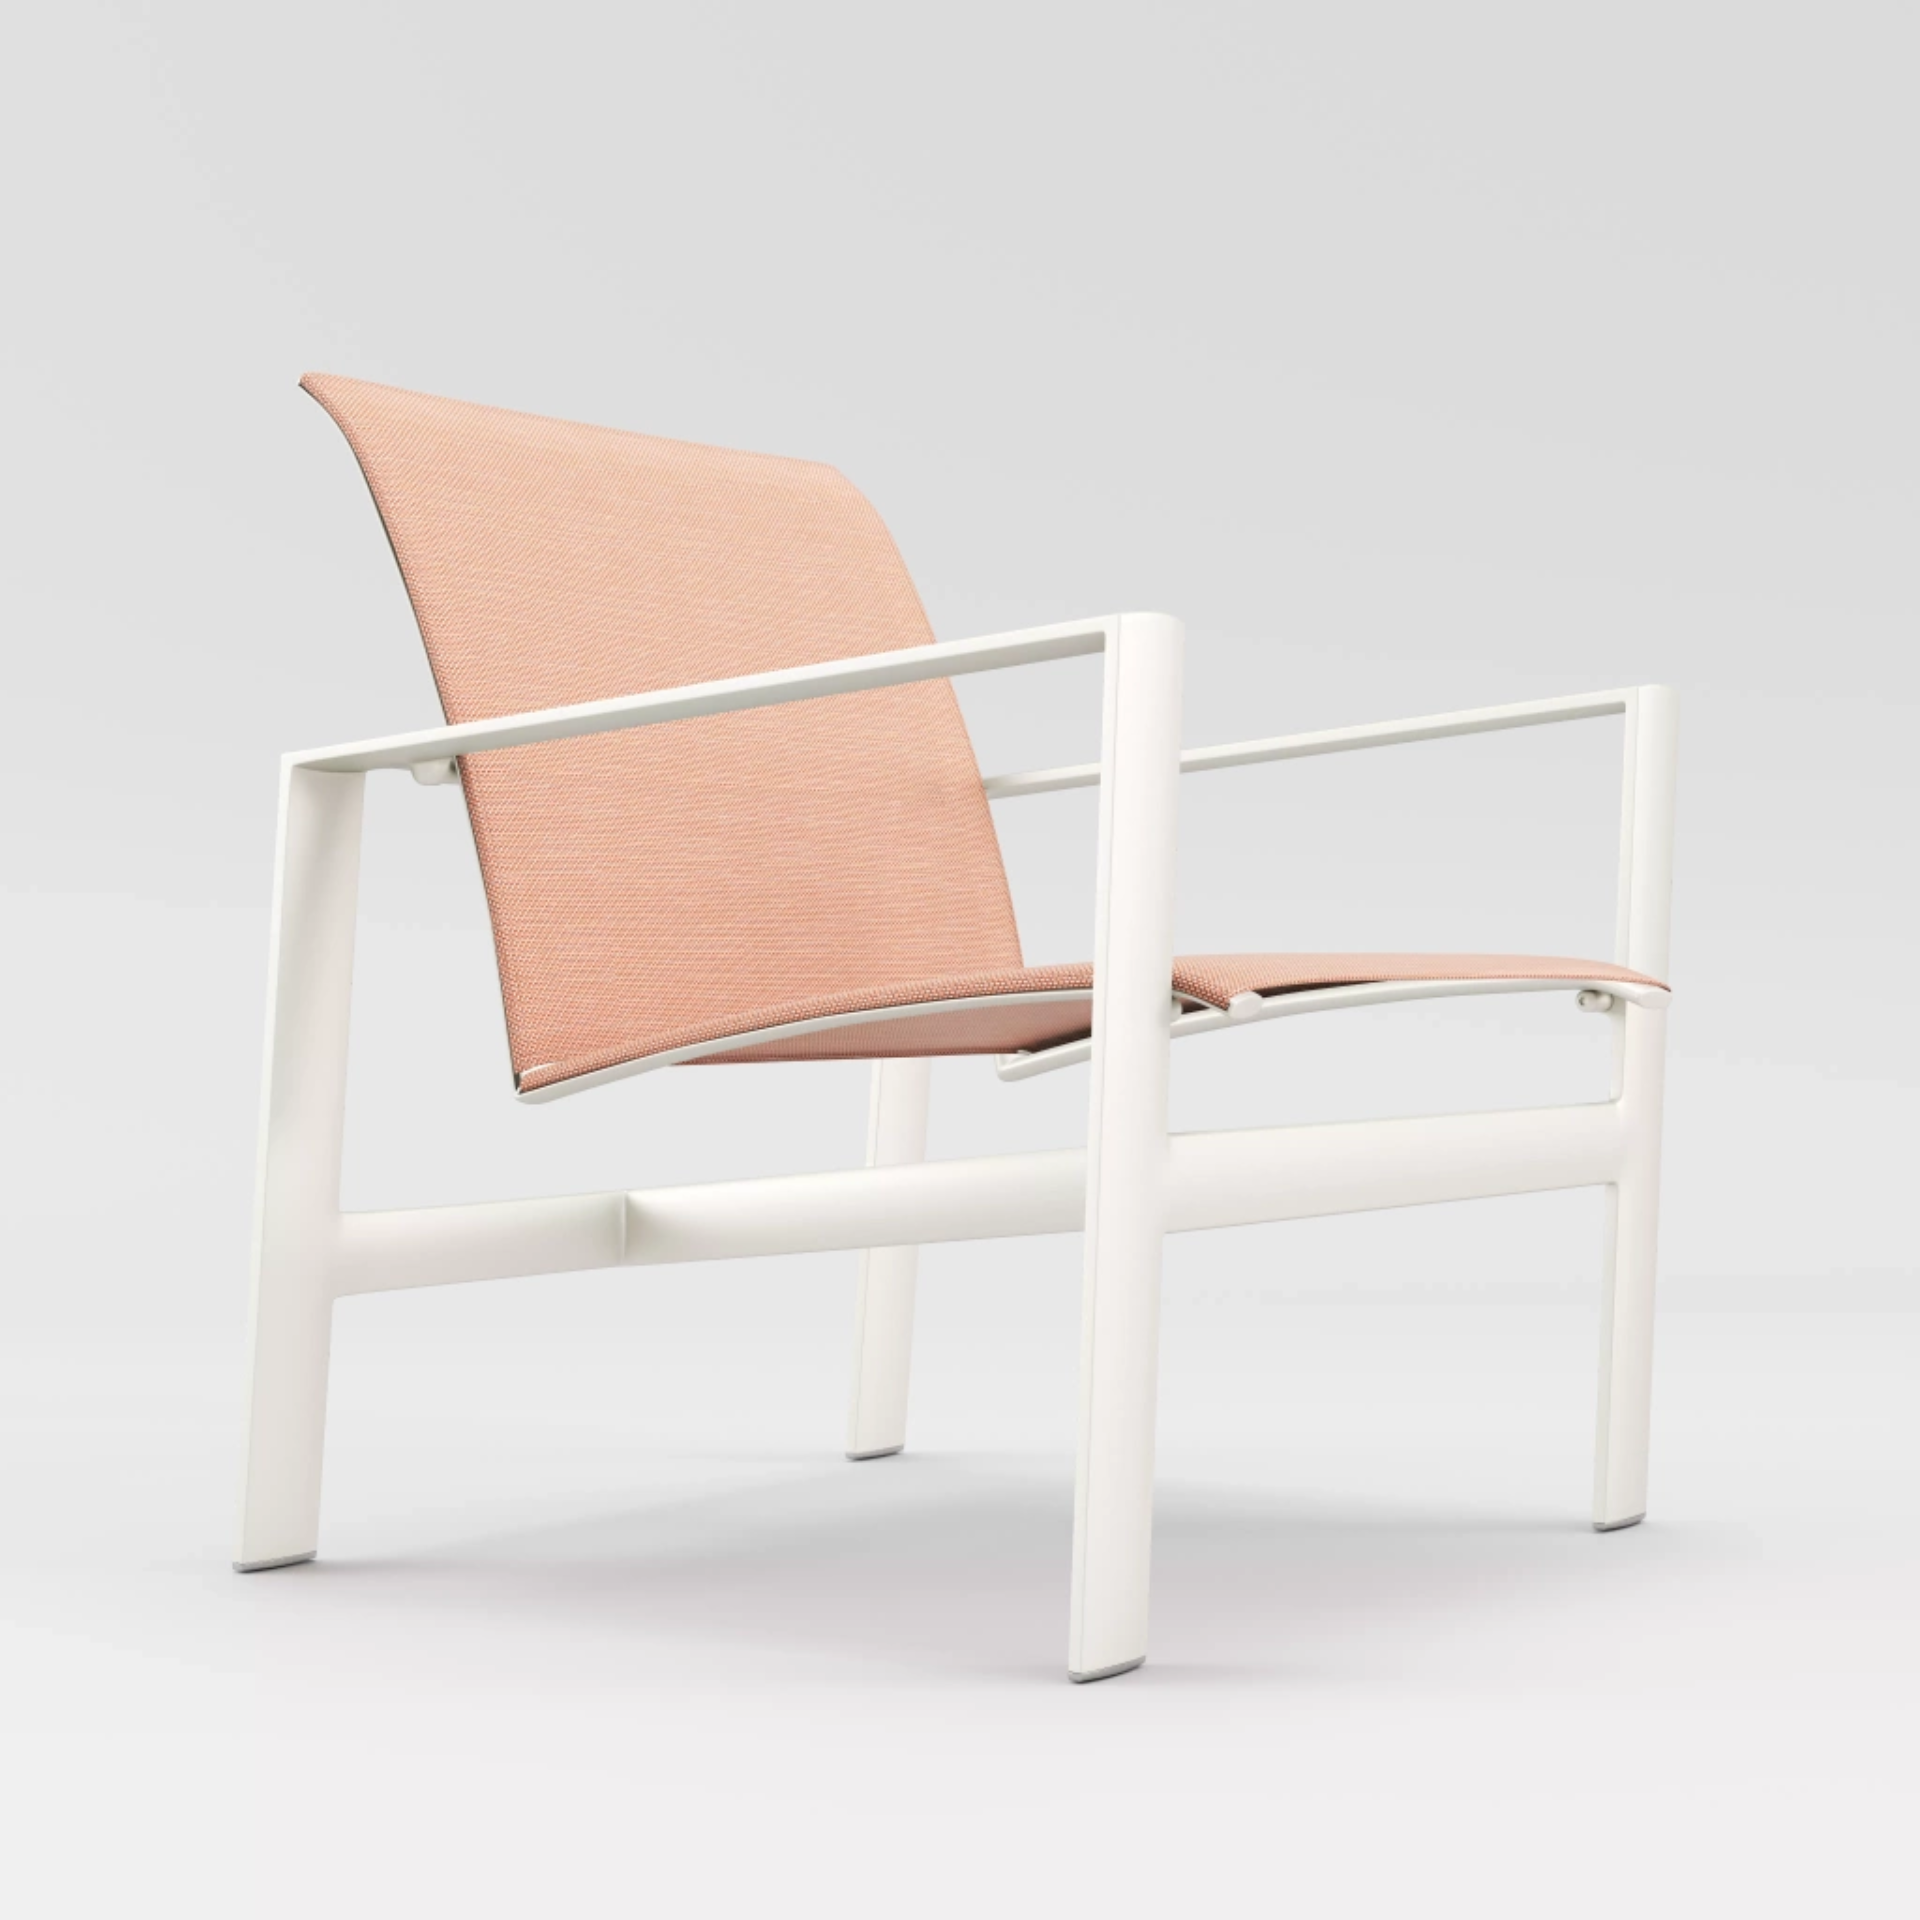 Parkway Sling Lounge Chair by Brown Jordan